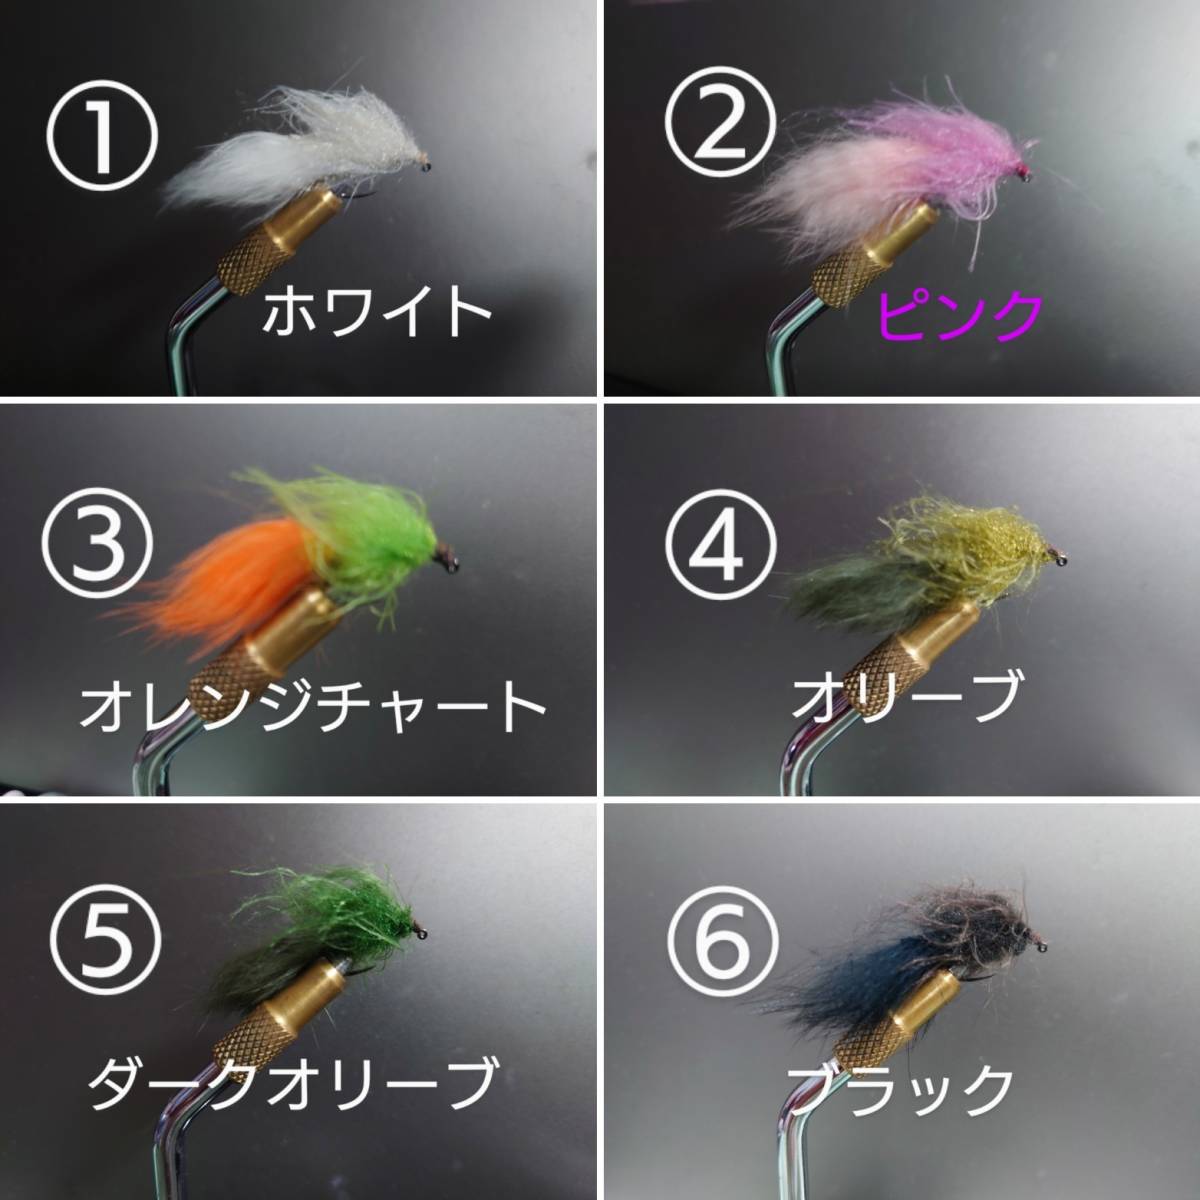 鉄板カラー☆ライトフェザージグ0.6g☆マスの餌☆6個セット☆カラー変更可の画像5